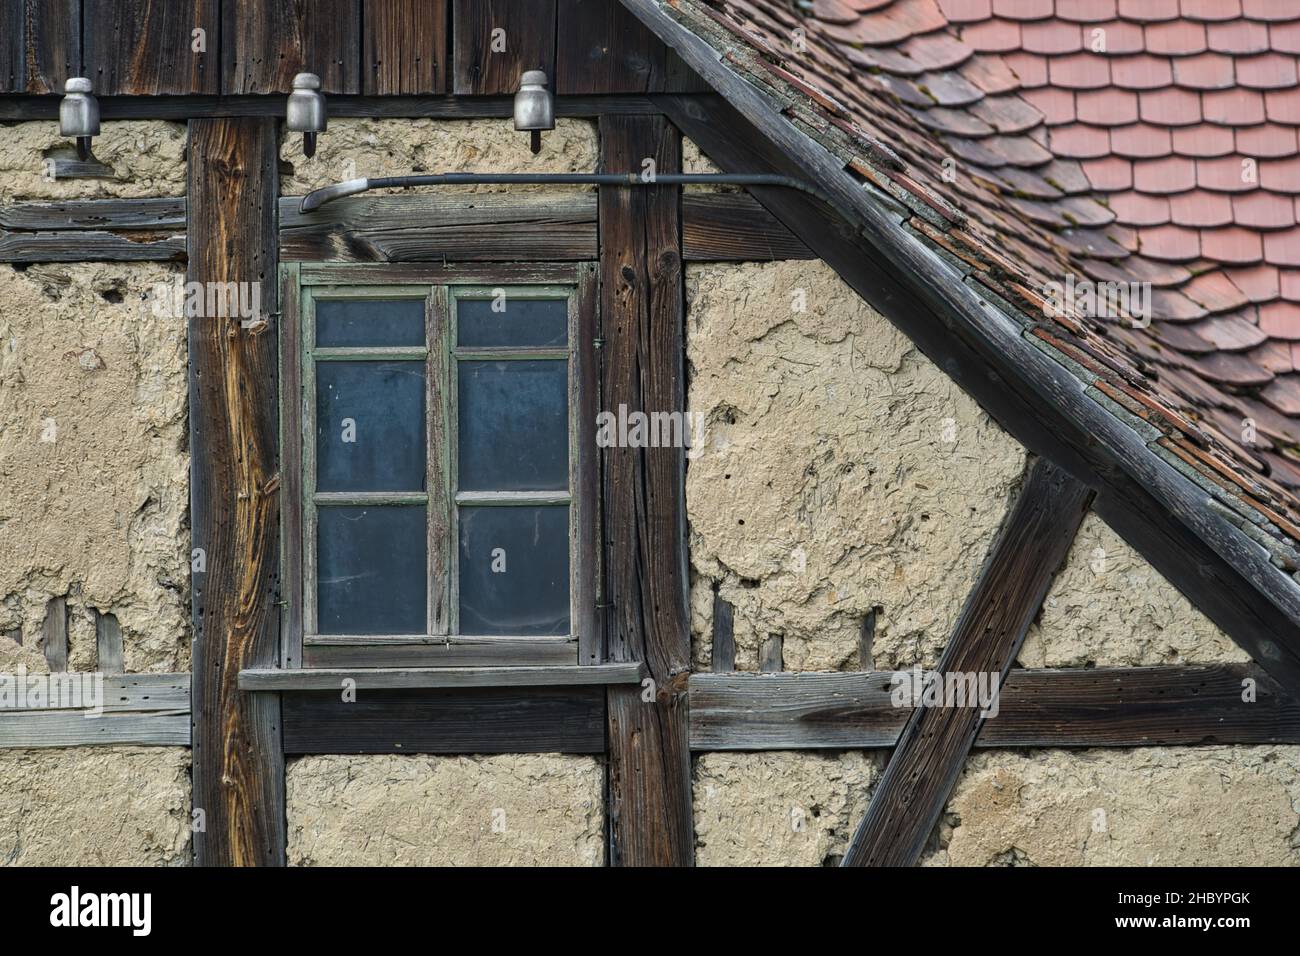 Alter Fachwerkgiebel Ausschnitt mit Lehm ausgefacht altes Fenster und Dachziegeln Foto Stock